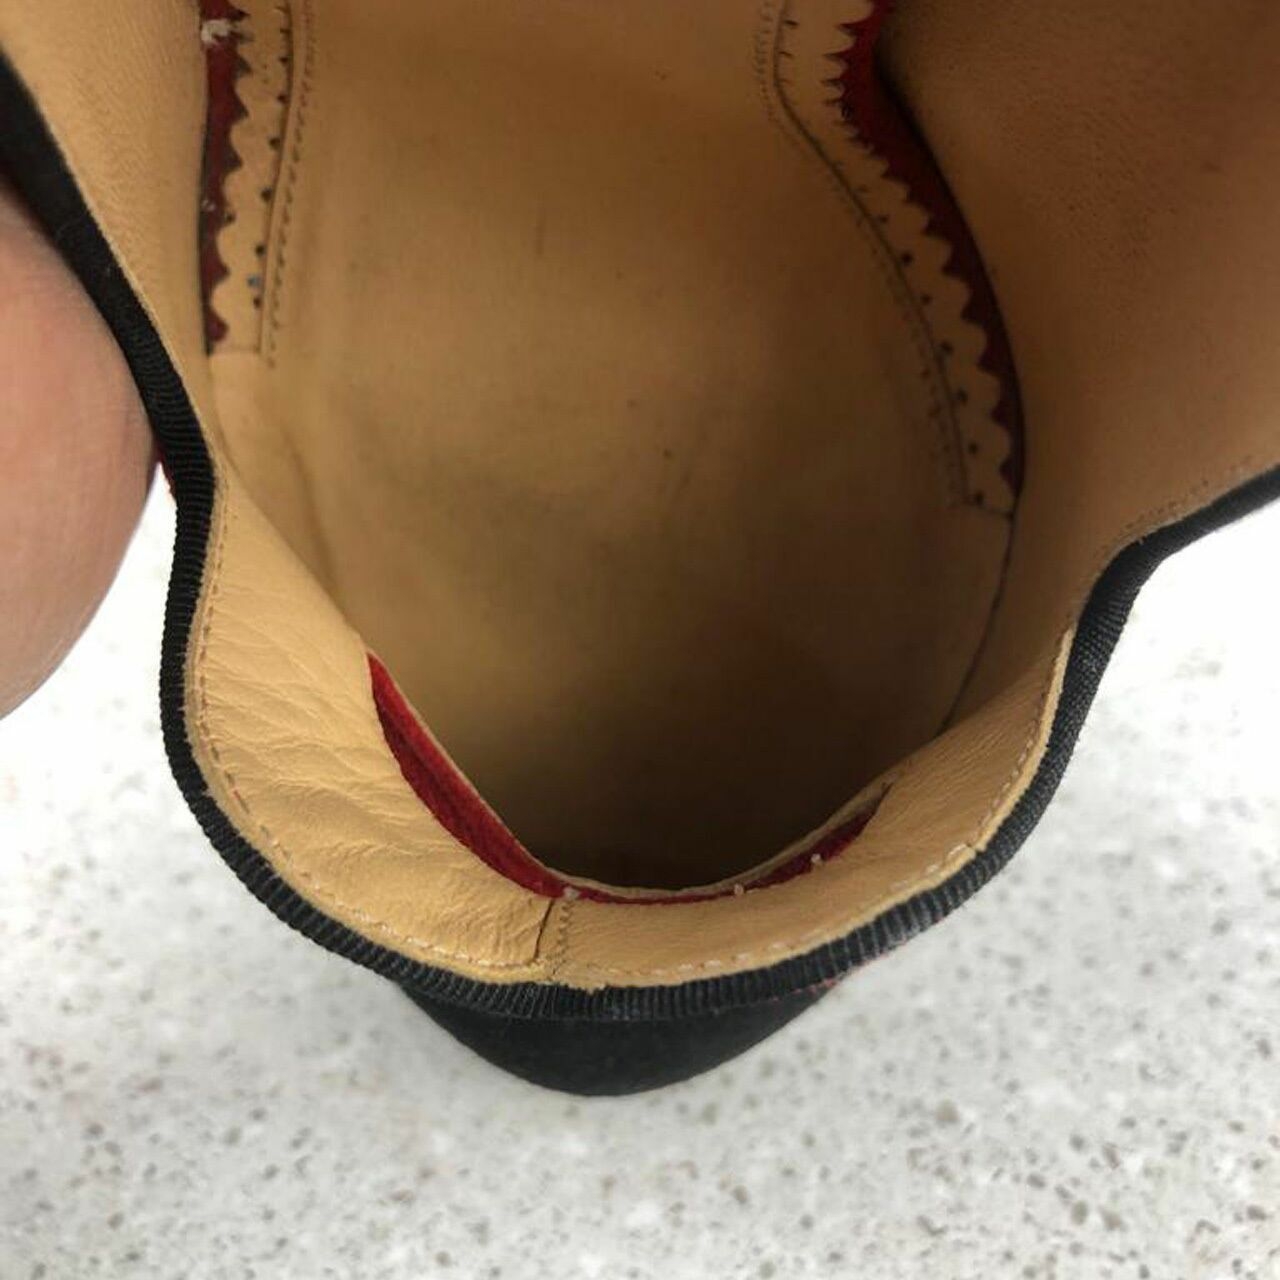  Charlotte Olympia RedBlack Suede Lulu Lip Platform Pumps Heels